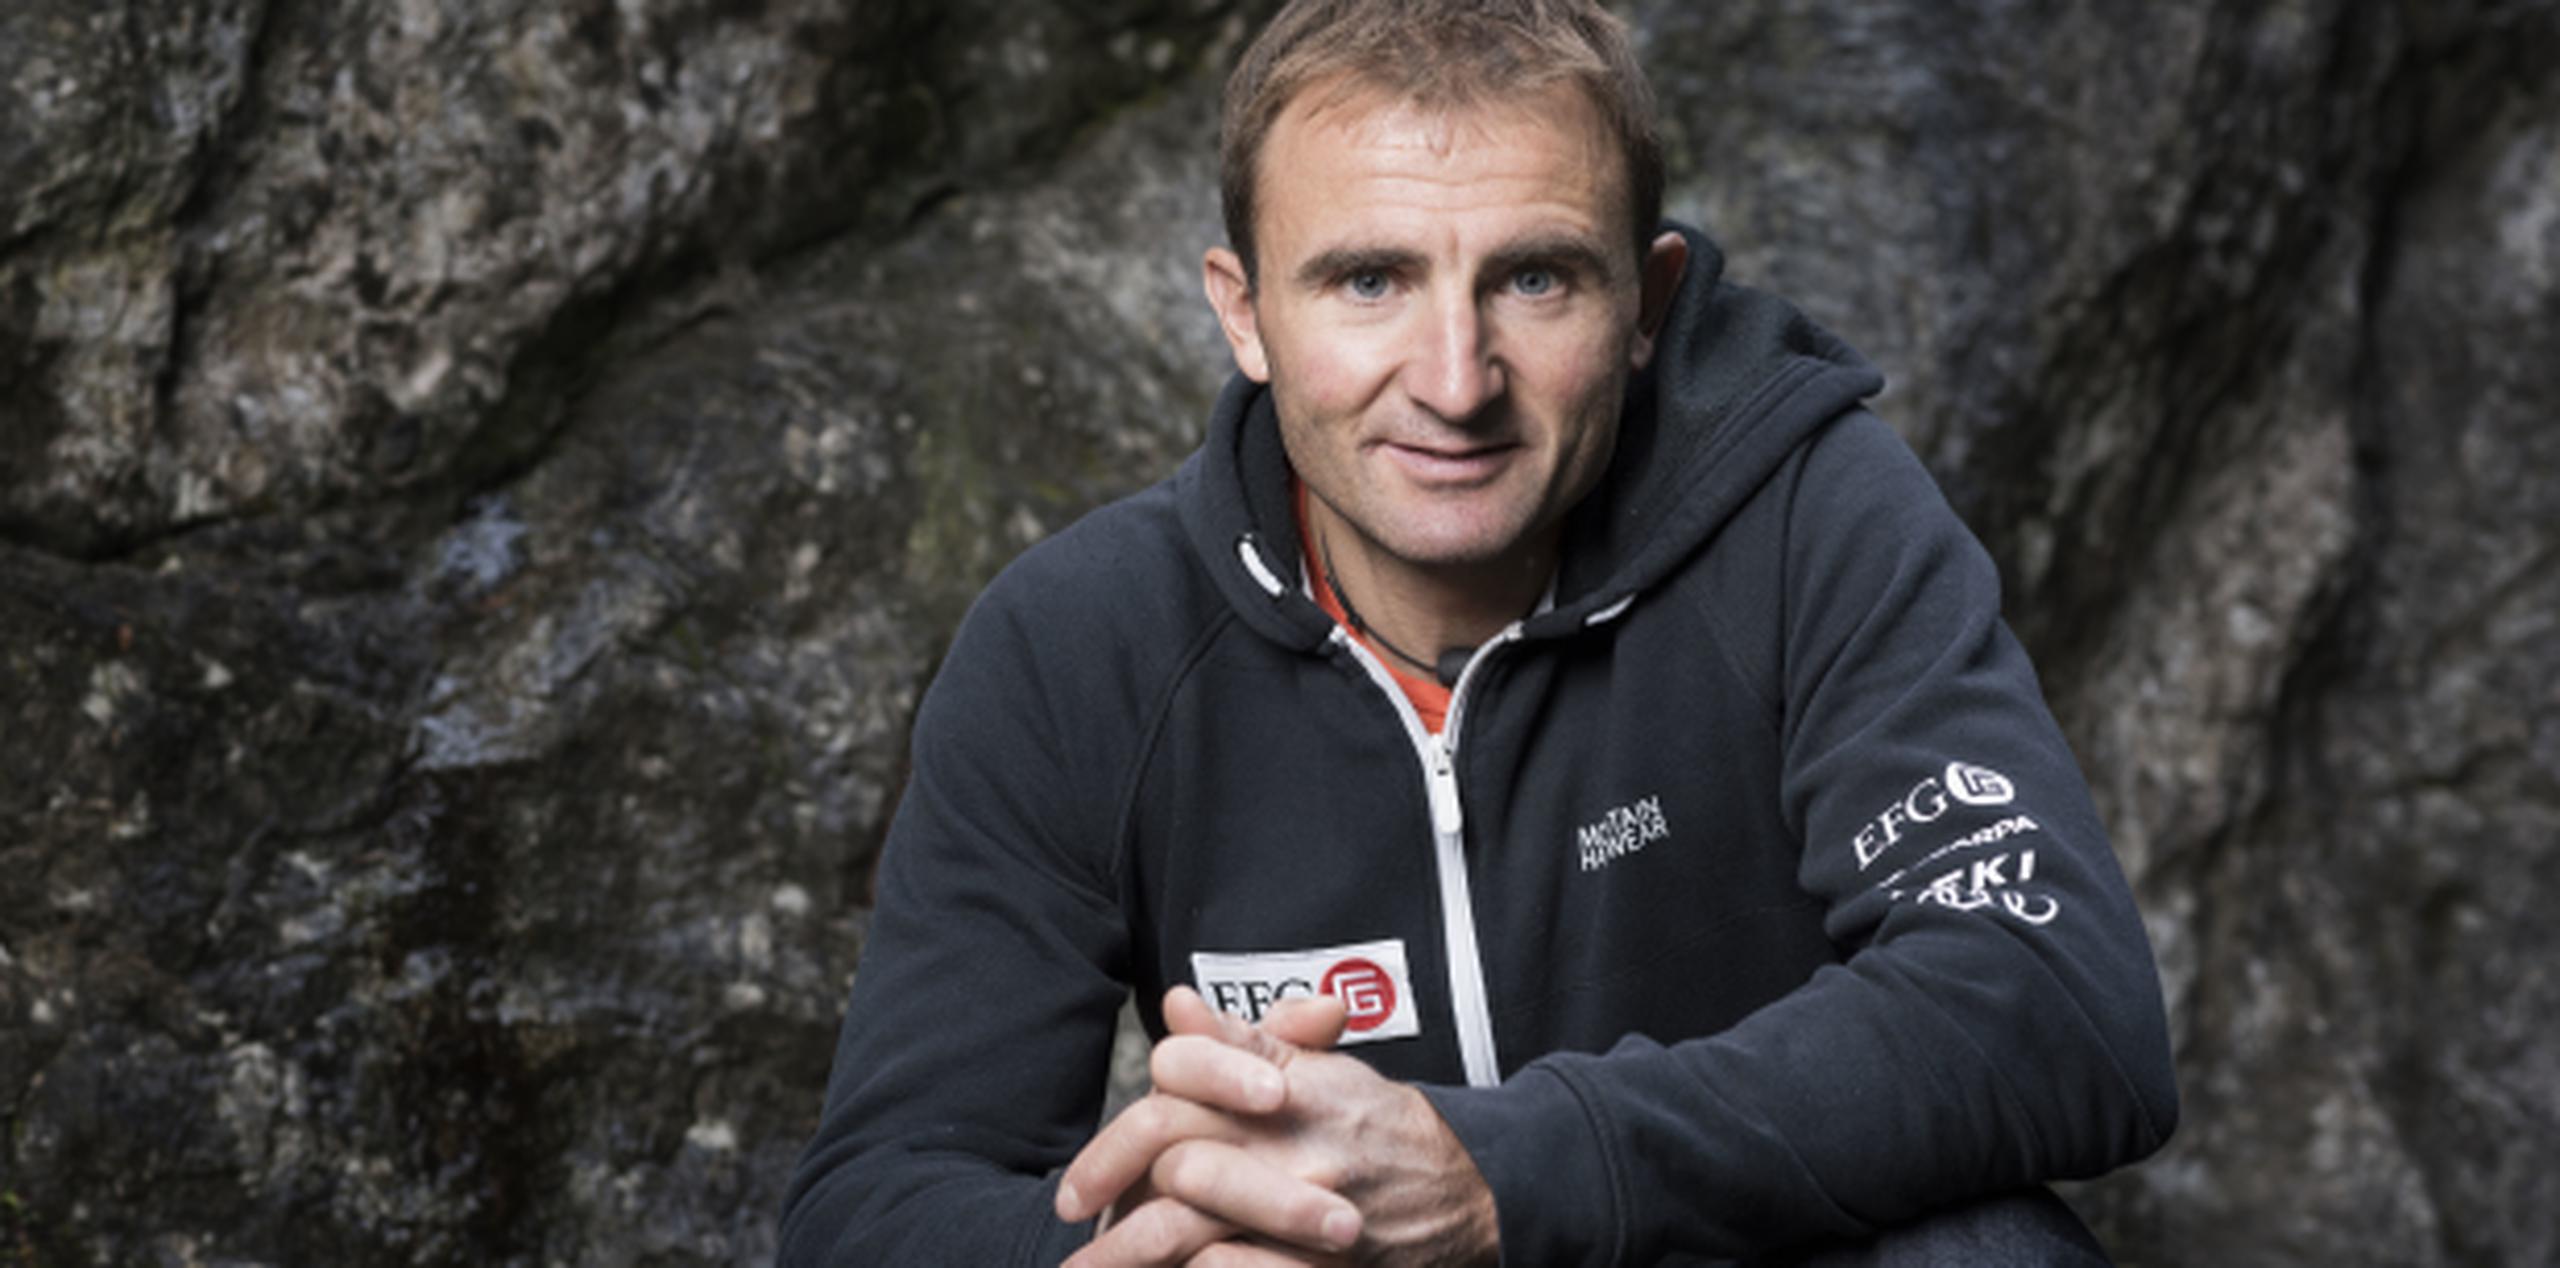 Ueli Steck falleció el domingo en un accidente de montañismo a los 40 años.  (AP)